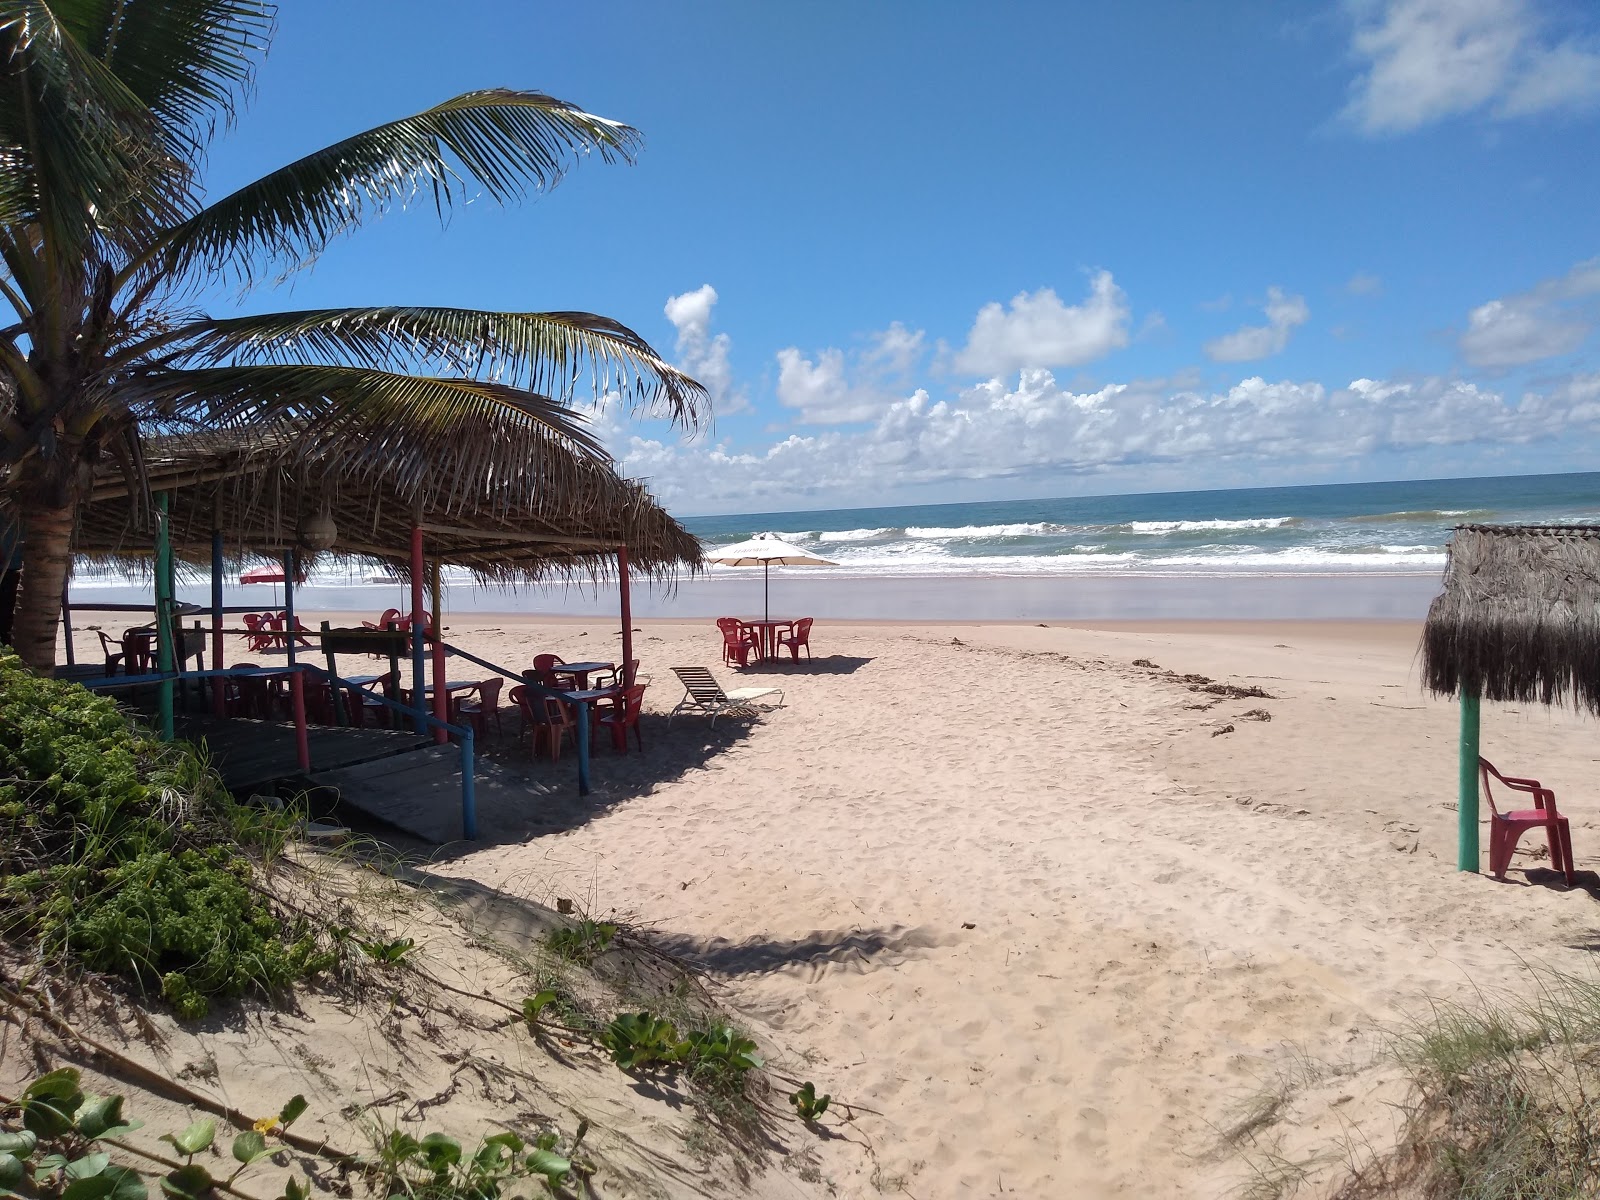 Praia de Massarandupio的照片 - 受到放松专家欢迎的热门地点